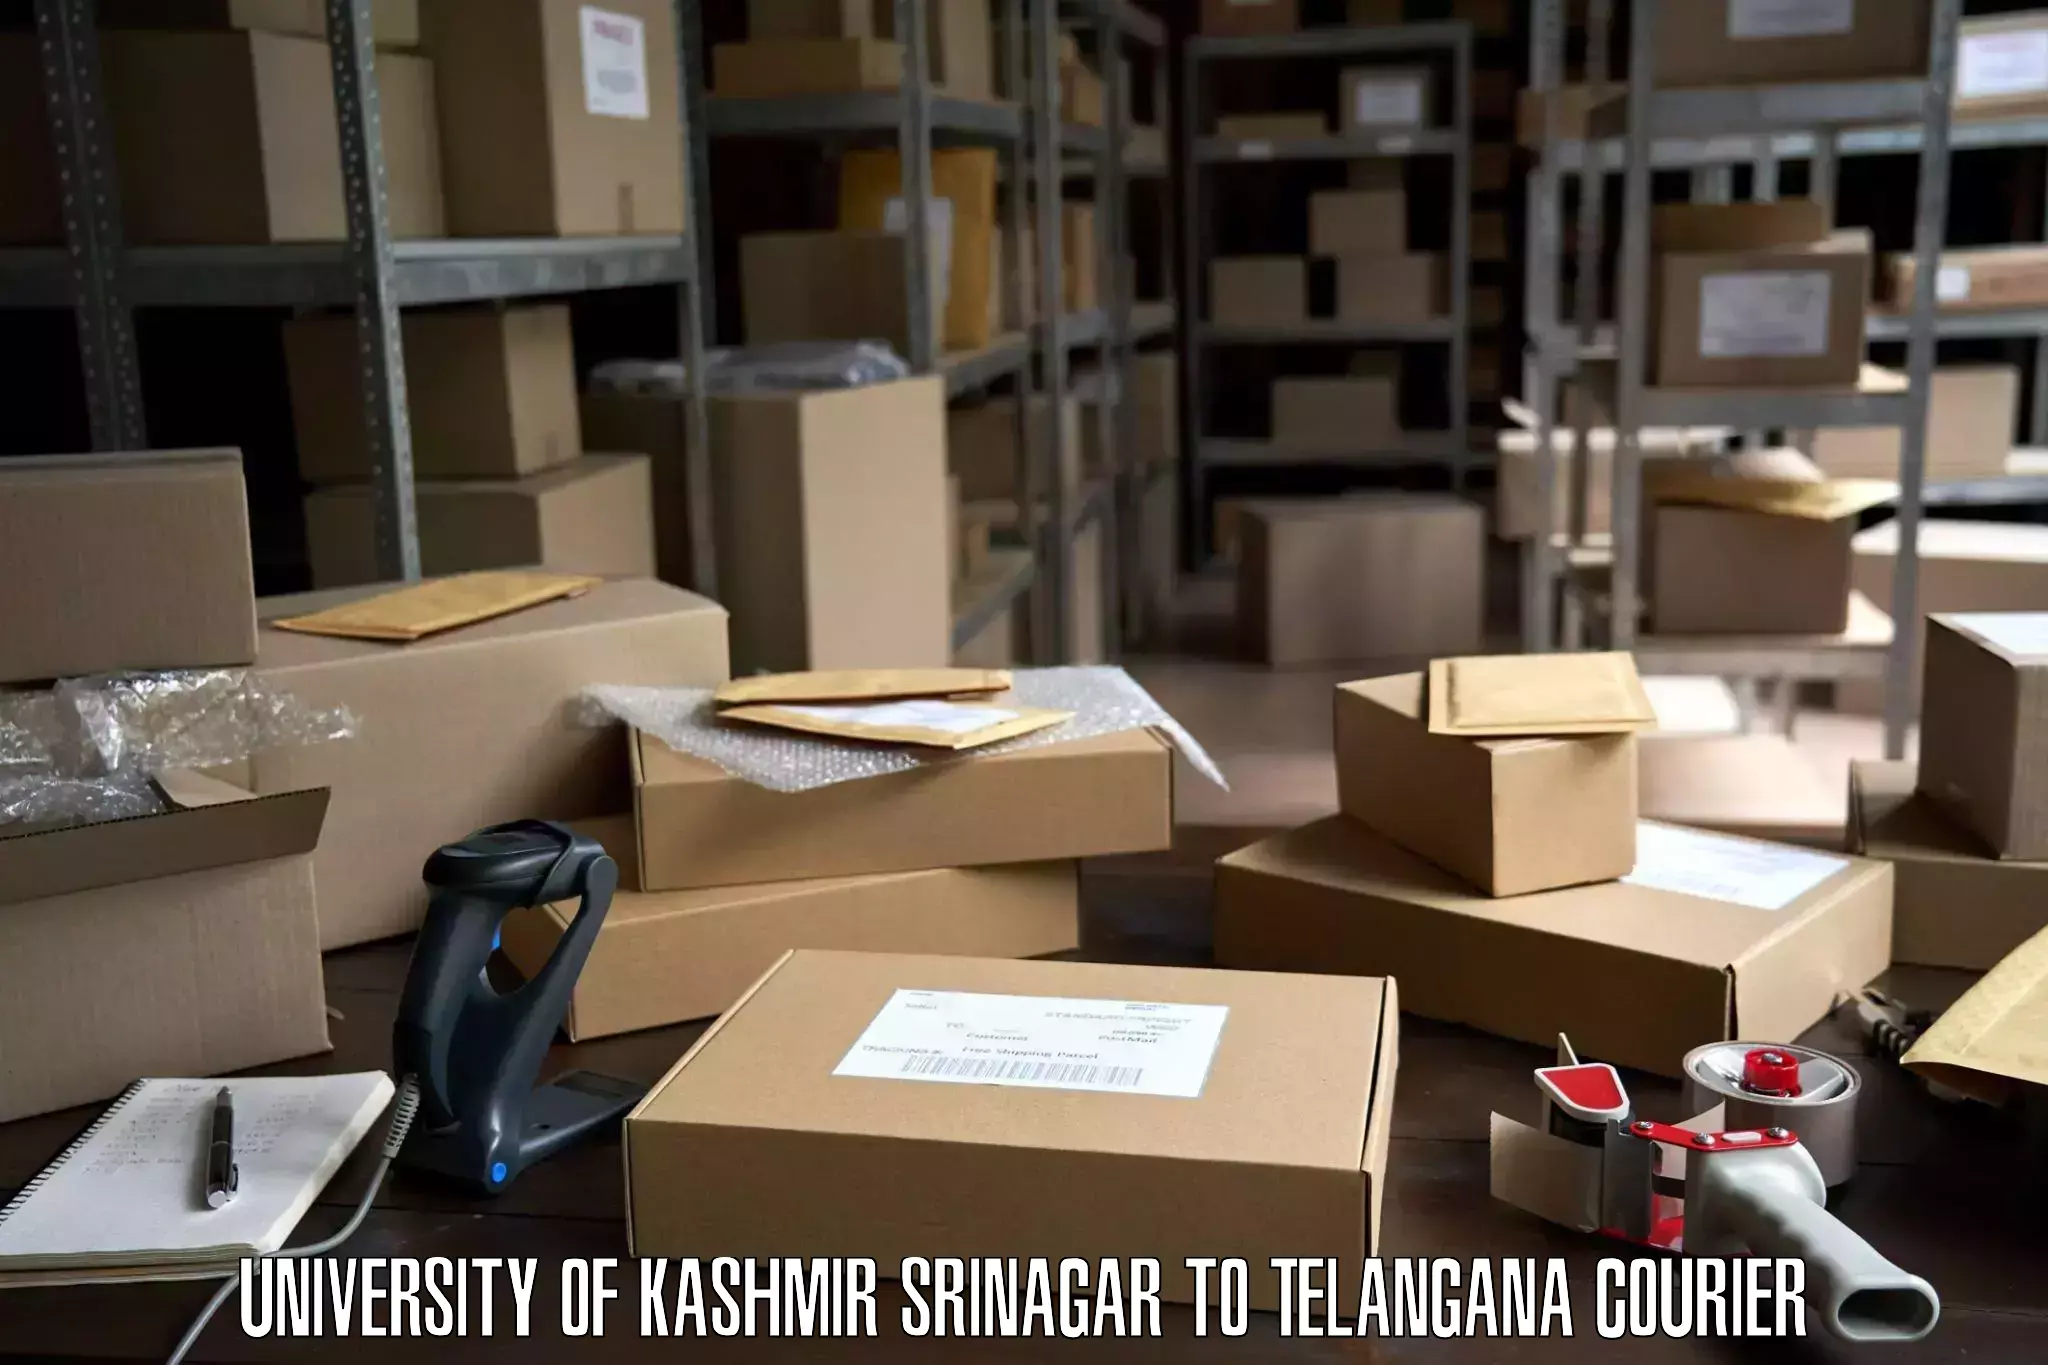 Skilled furniture transporters University of Kashmir Srinagar to Jagtial